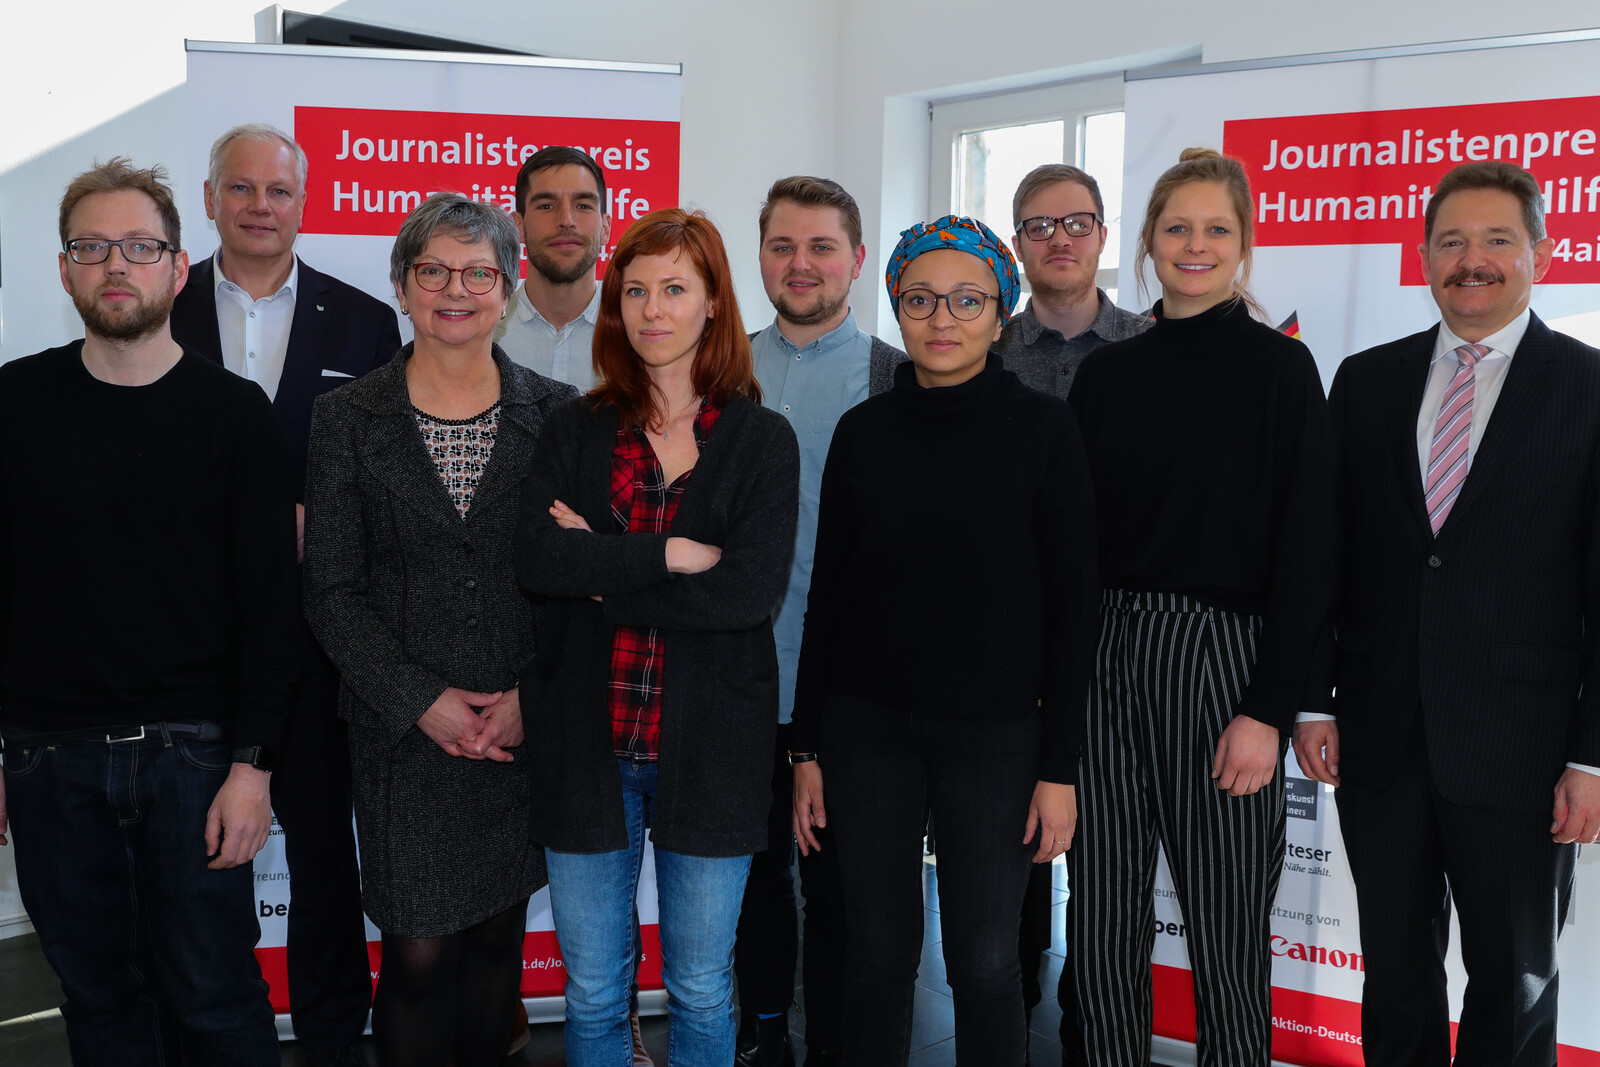 Gruppenfoto von der Auftaktveranstaltung zum "Journalistenpreis Humanitäre Hilfe" 2018.